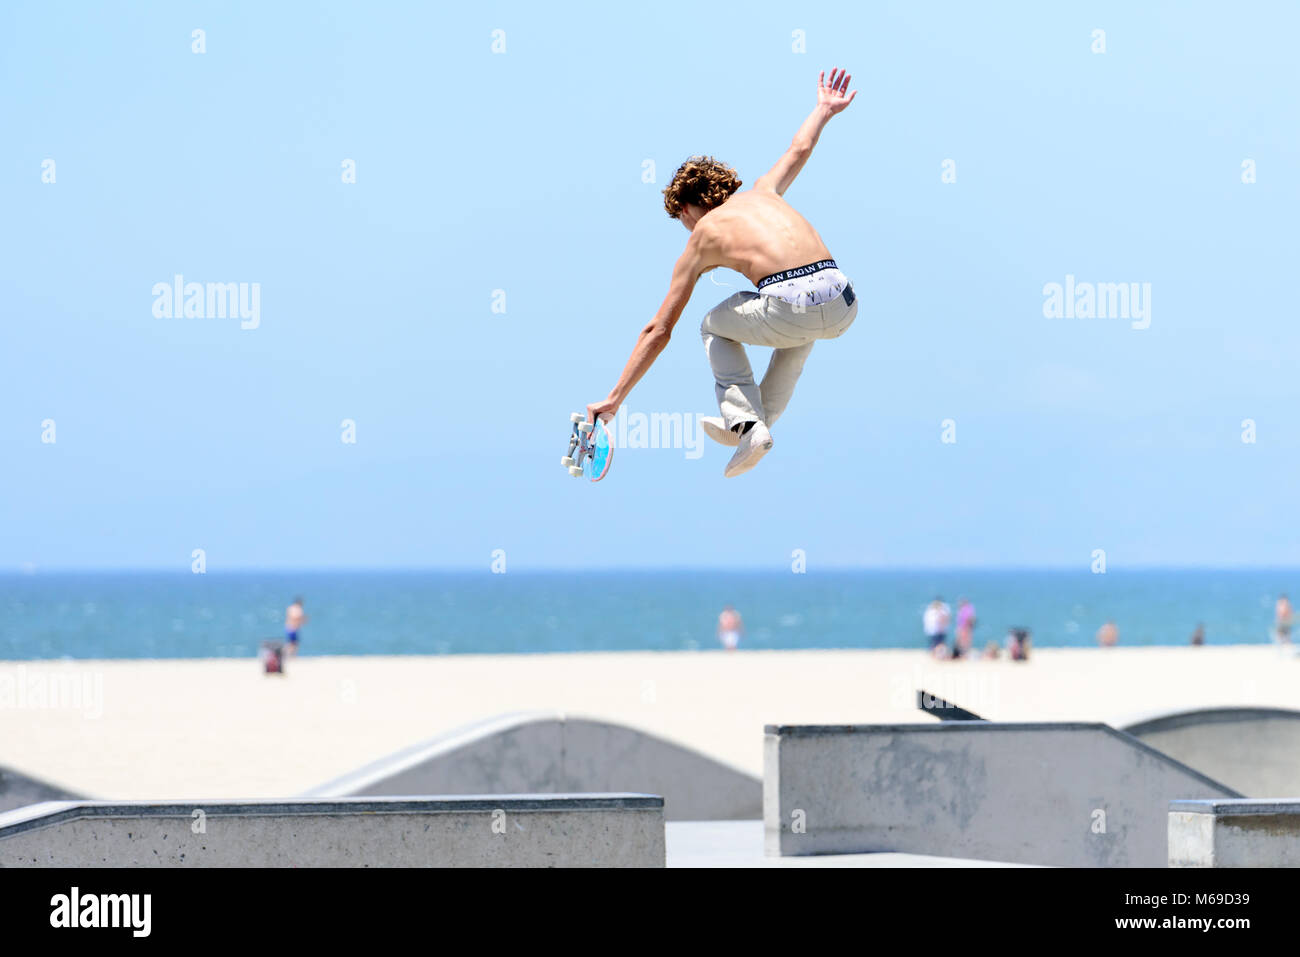 Joven skater en el skatepark en la mundialmente famosa playa de Venice Boardwalk, una de las atracciones más populares de California. Foto de stock